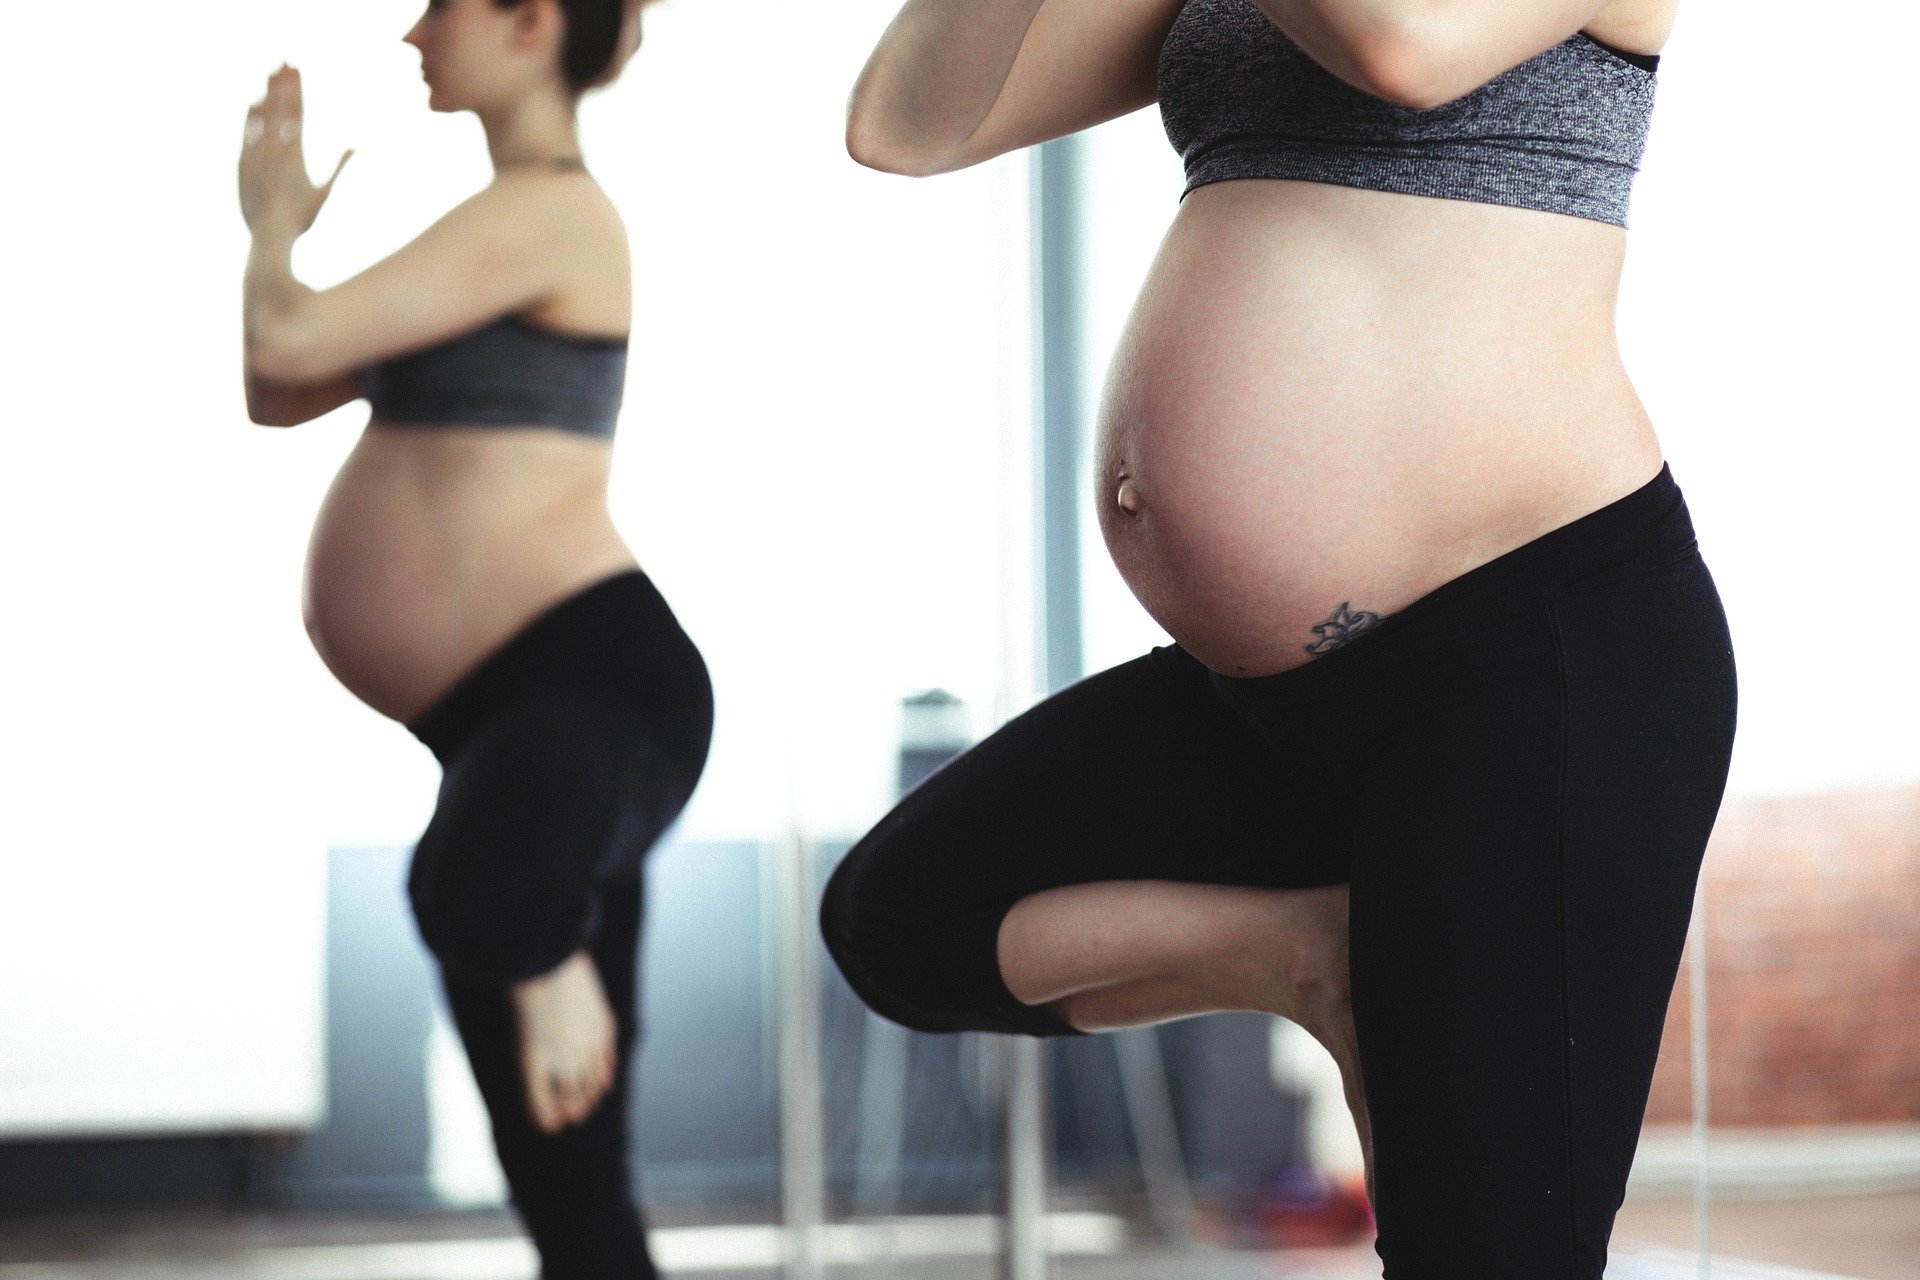 27 tydzień ciąży, planowanie ciąży, ciąża i poród,mama w ruchu,dziecko,licencja CC-BY-SA-4